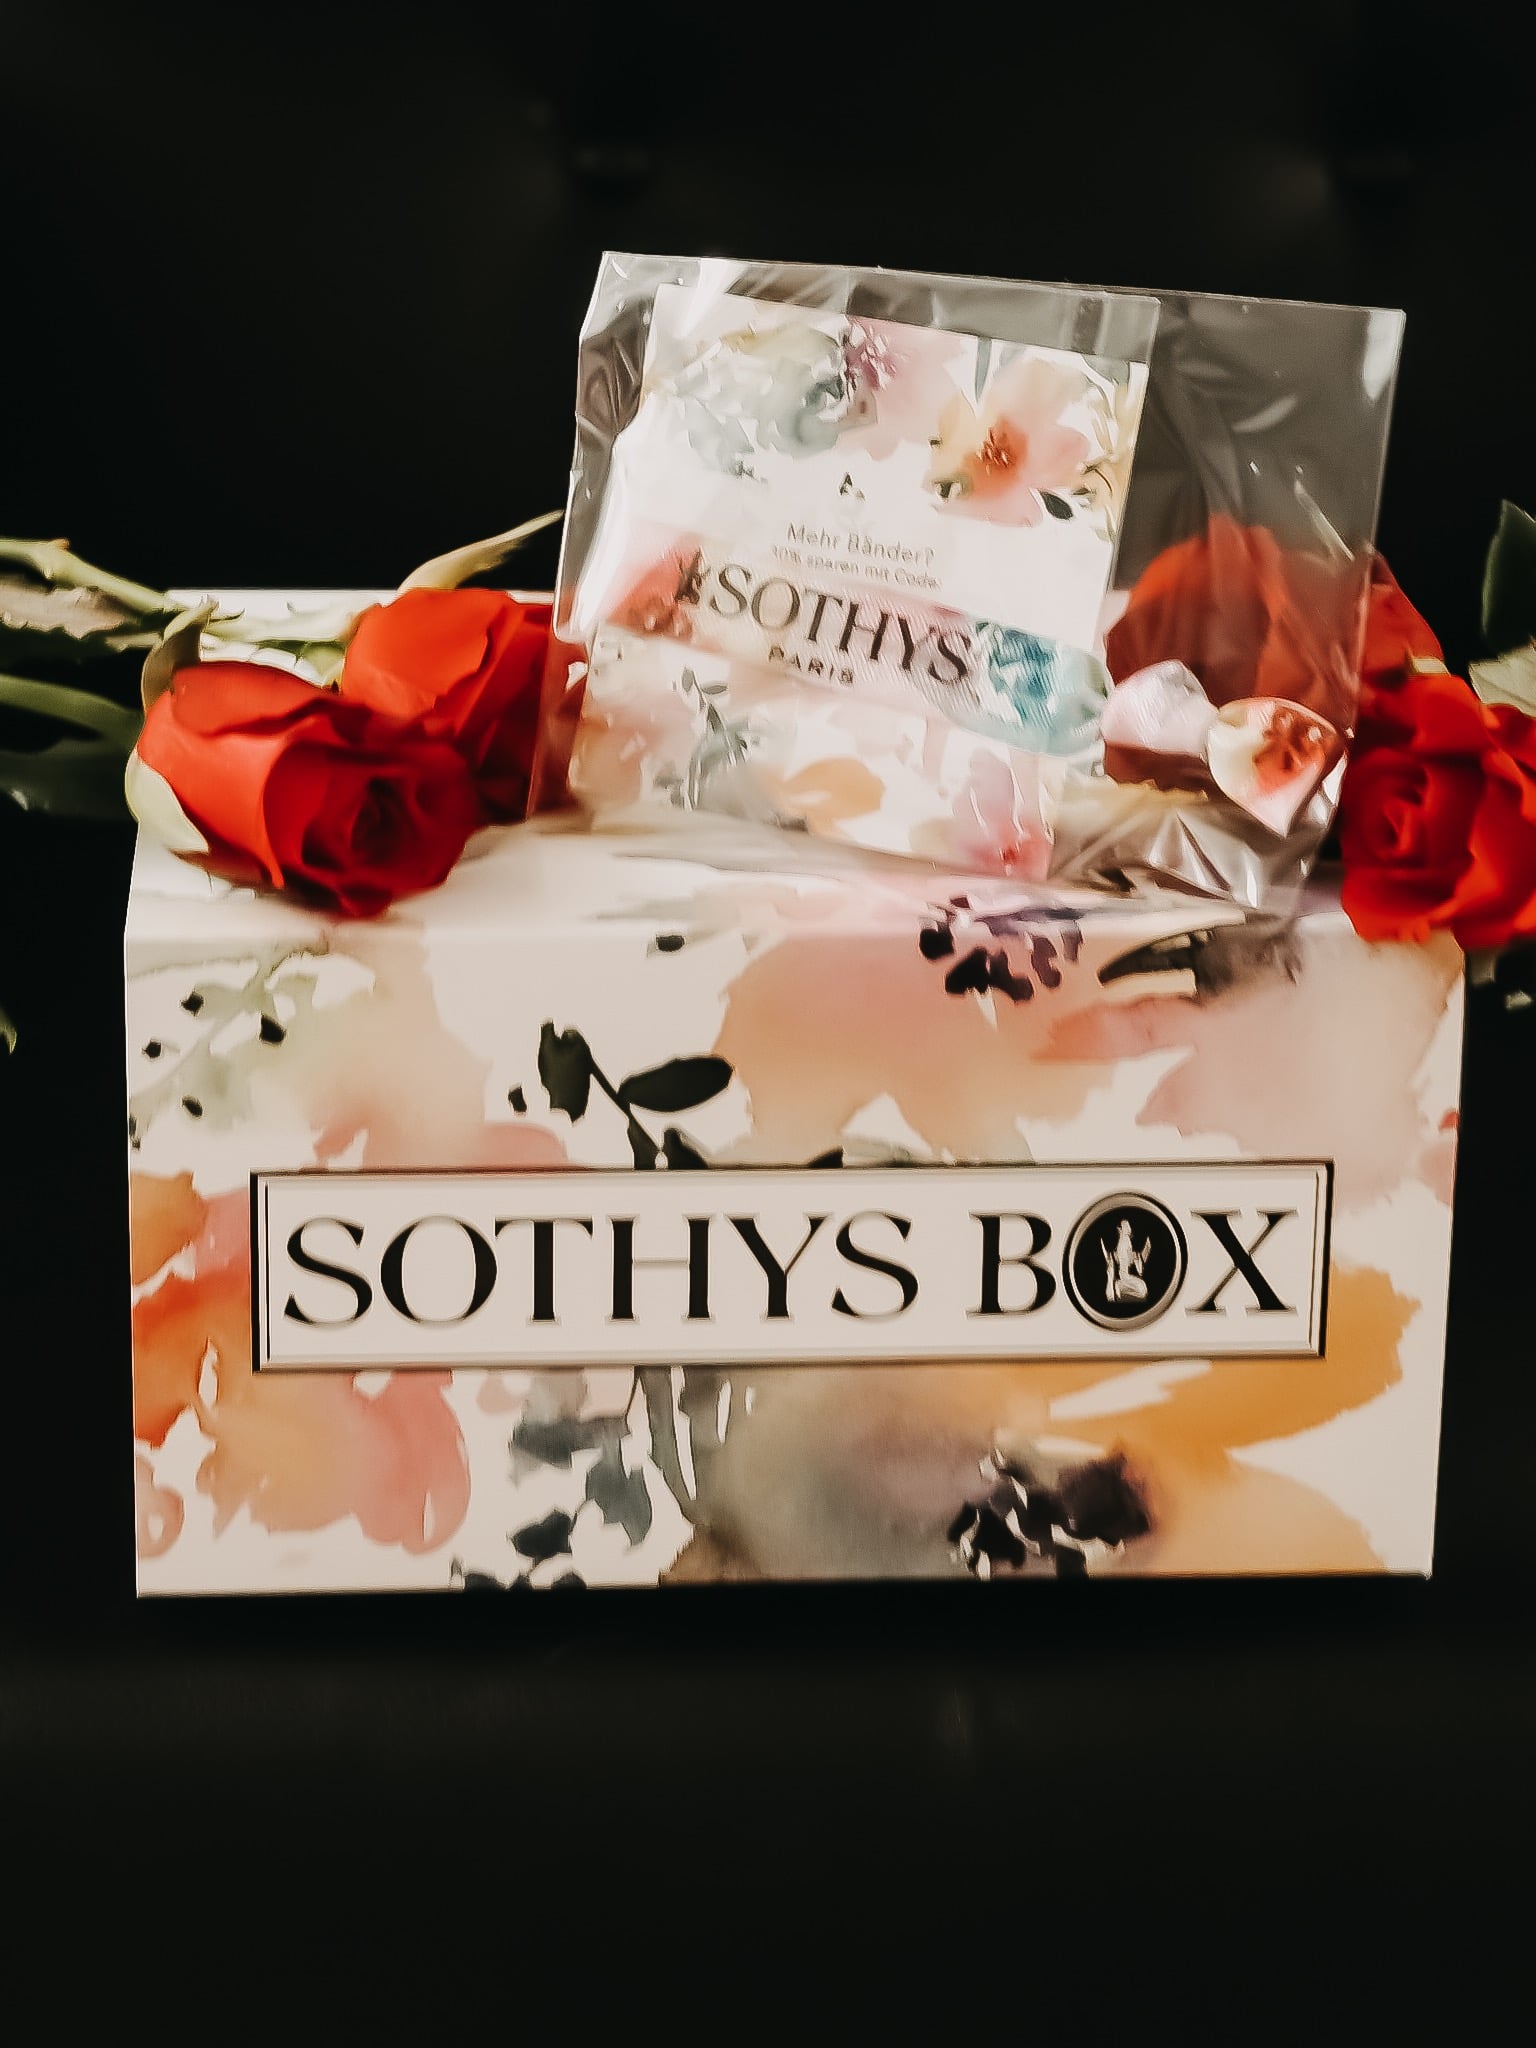 Seit dem 3. Juni gibt es die beliebte Sothys Box Summer-Edition 2019 mit Highlights. Alle enthaltenen Produkte HIER auf dem Beauty Blog und 5 € Rabatt Code.